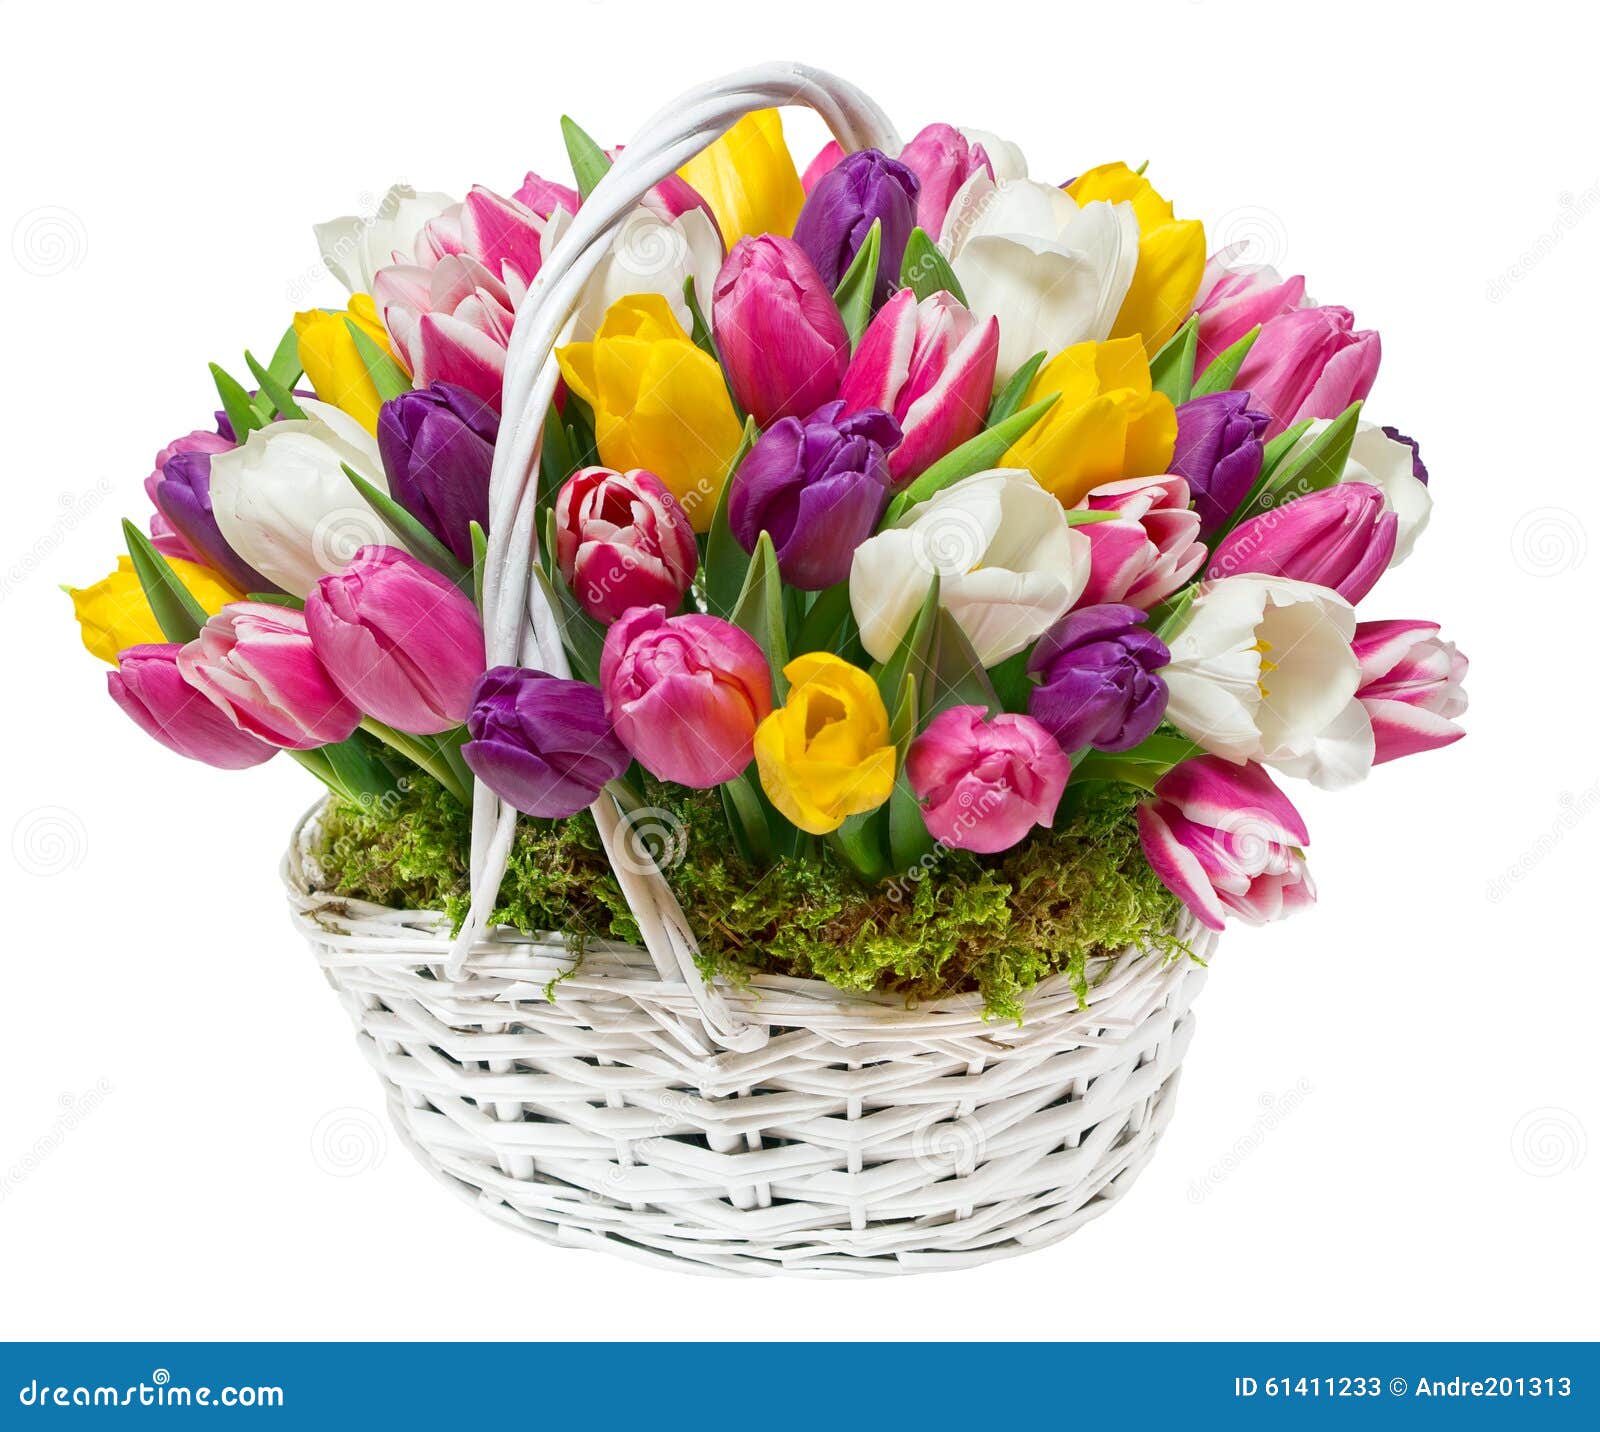 Тюльпаны в корзине картинки. Корзина с тюльпанами. Весенний букет. Красивый весенний букет. Корзина с цветами.